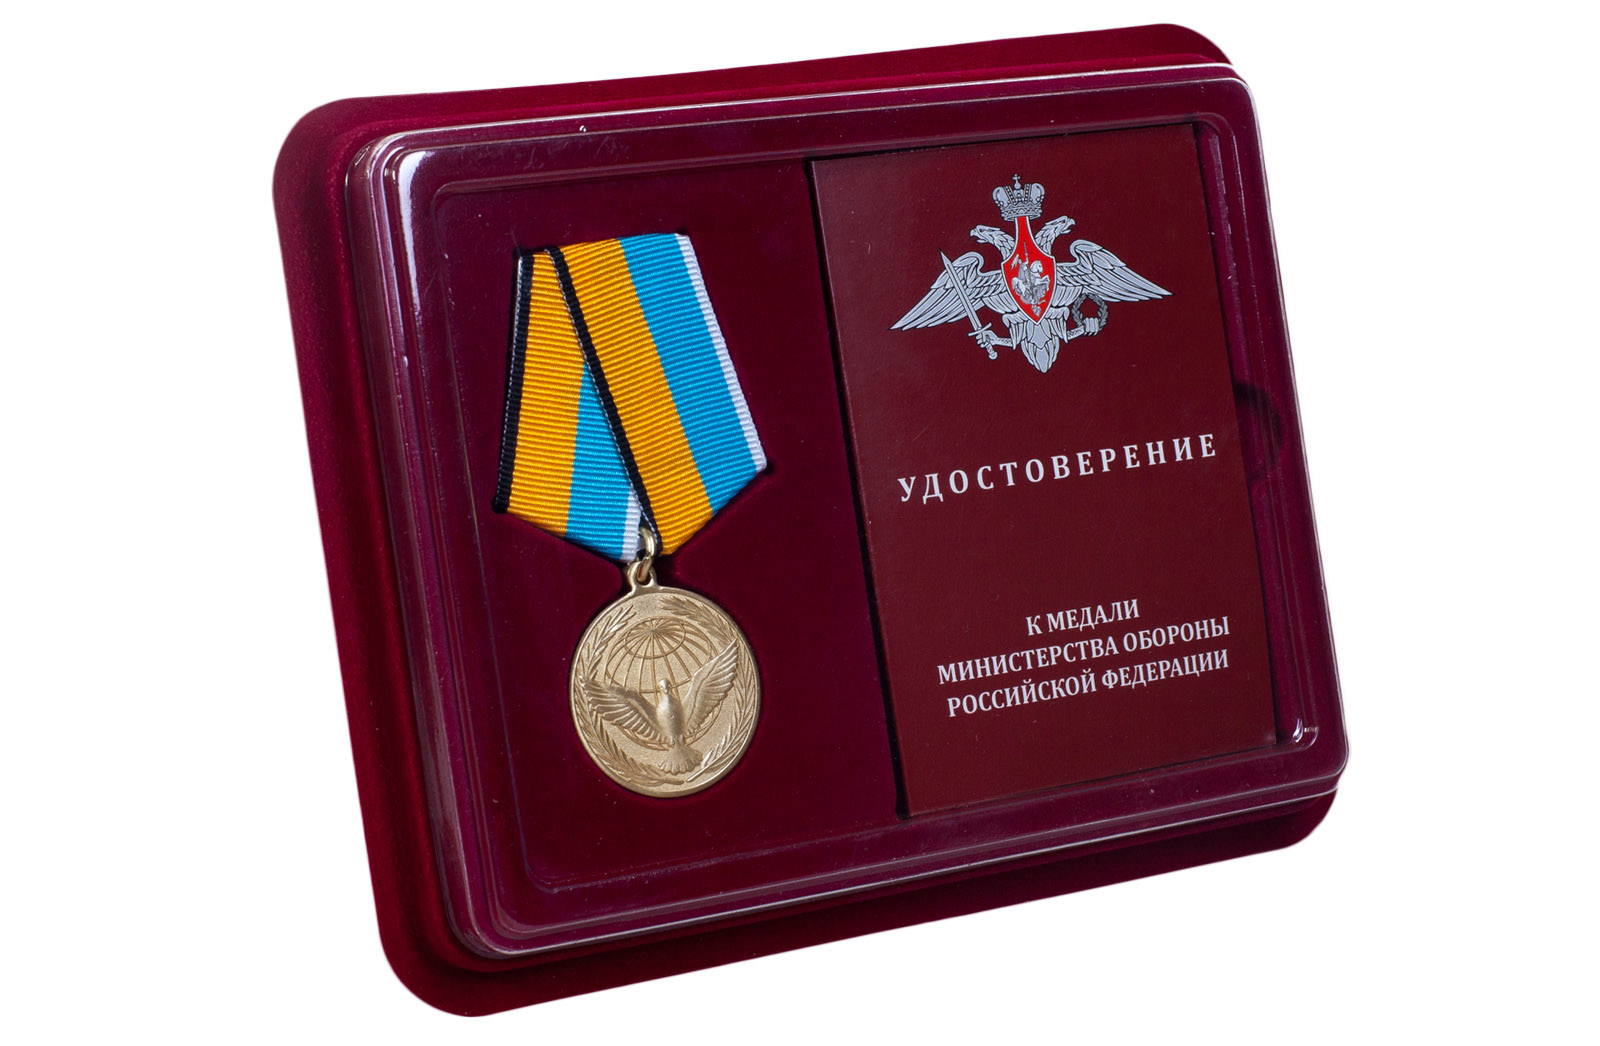 Купить памятную медаль Участнику миротворческой операции в подарок